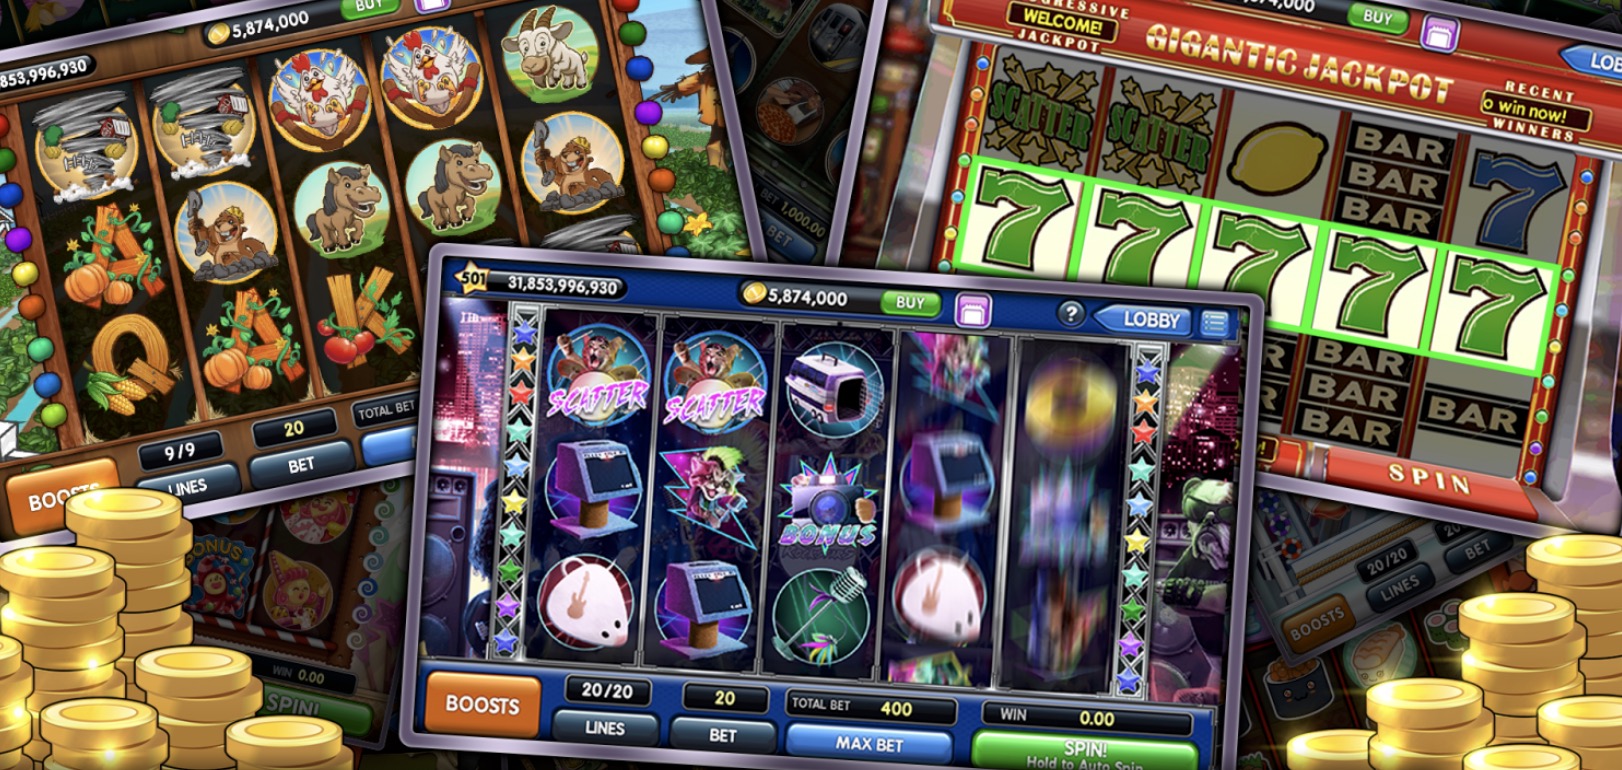 Гэмблинг и азарт в казино Вулкан Делюкс — не упустите свой счастливый случай